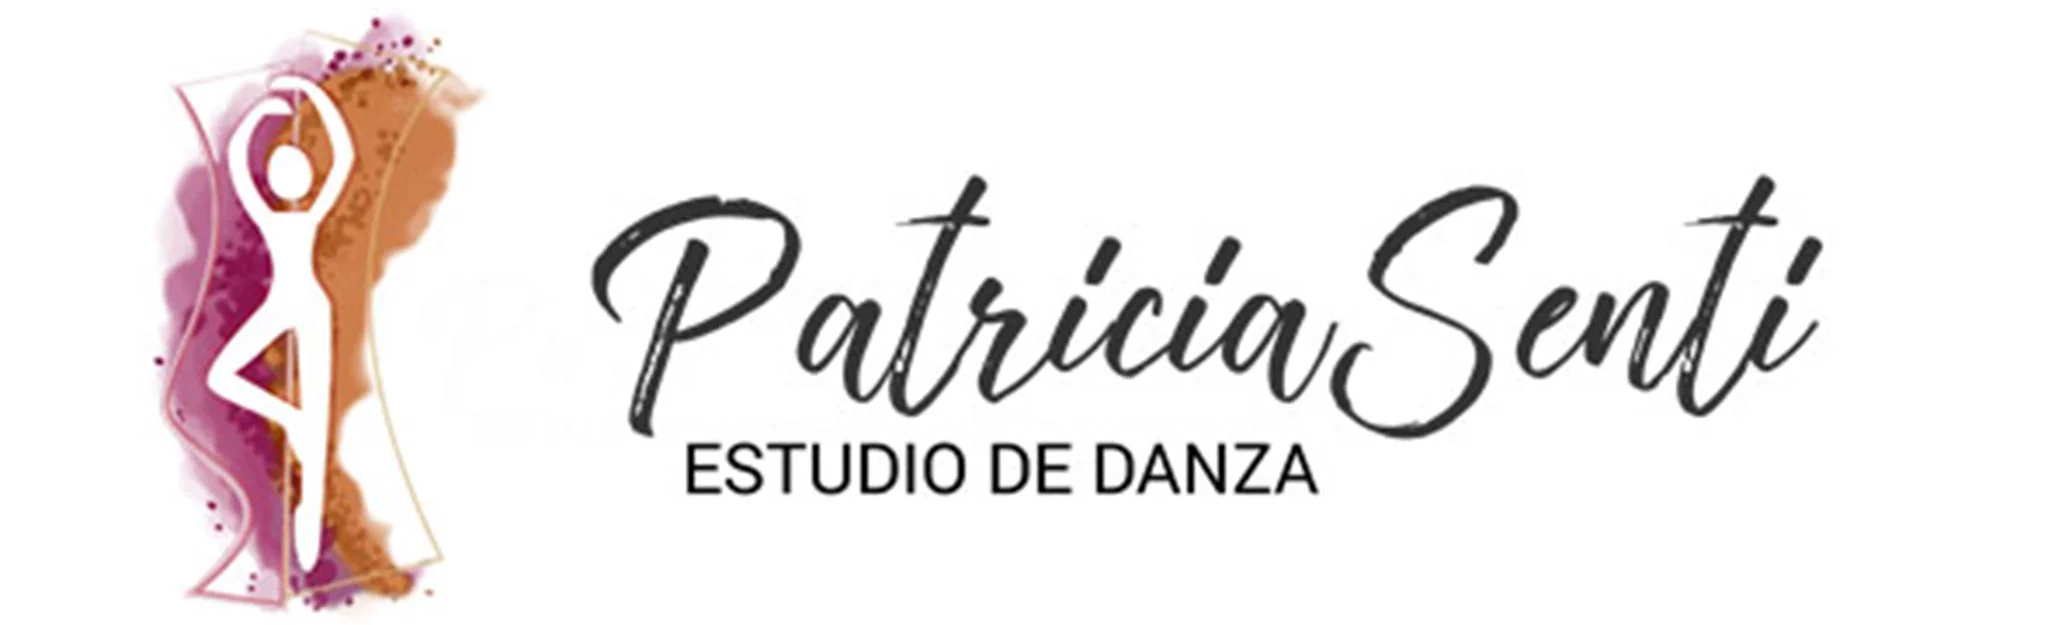 Logotipo de Estudio de Danza Patricia Sentí